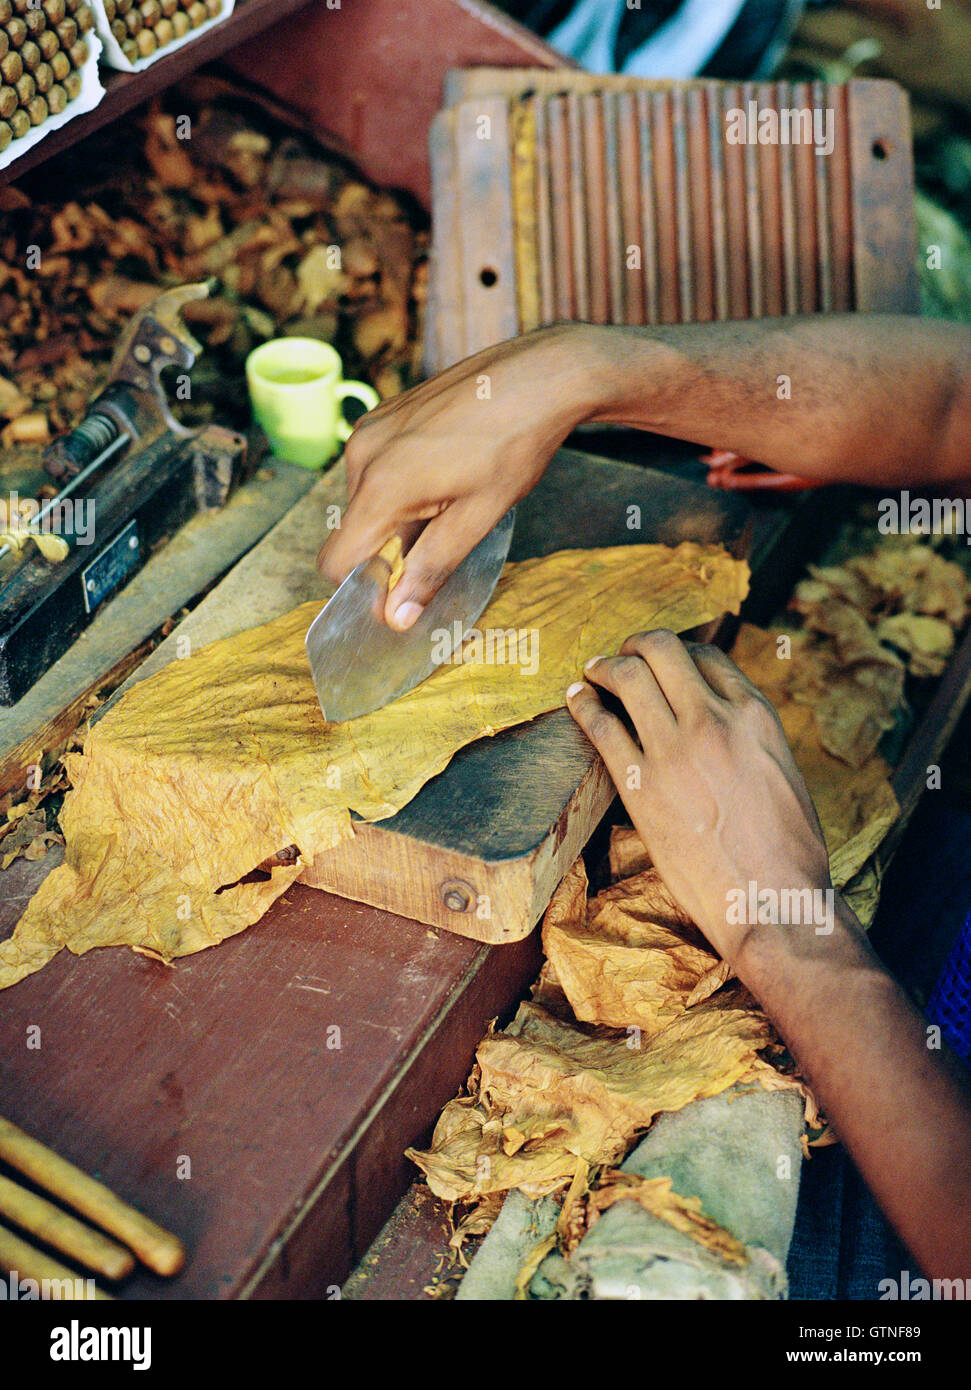 Un fabricant de cigares locale roule un cigare. Santo Domingo, République dominicaine. Banque D'Images